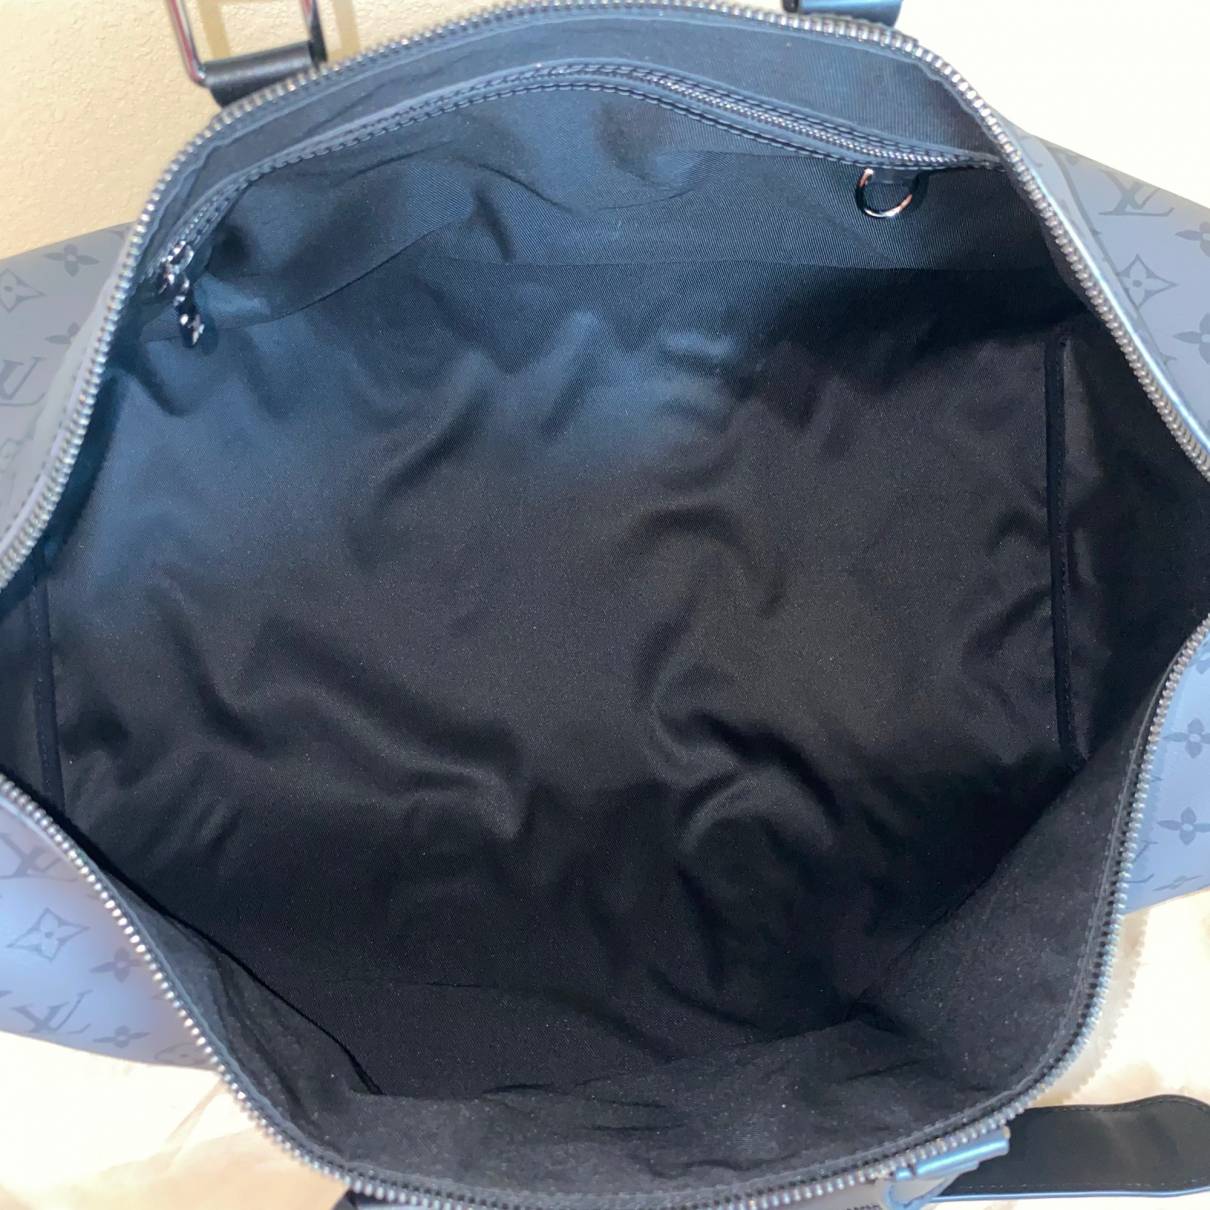 Keepall cloth travel bag Louis Vuitton Black in Cloth - 32559308